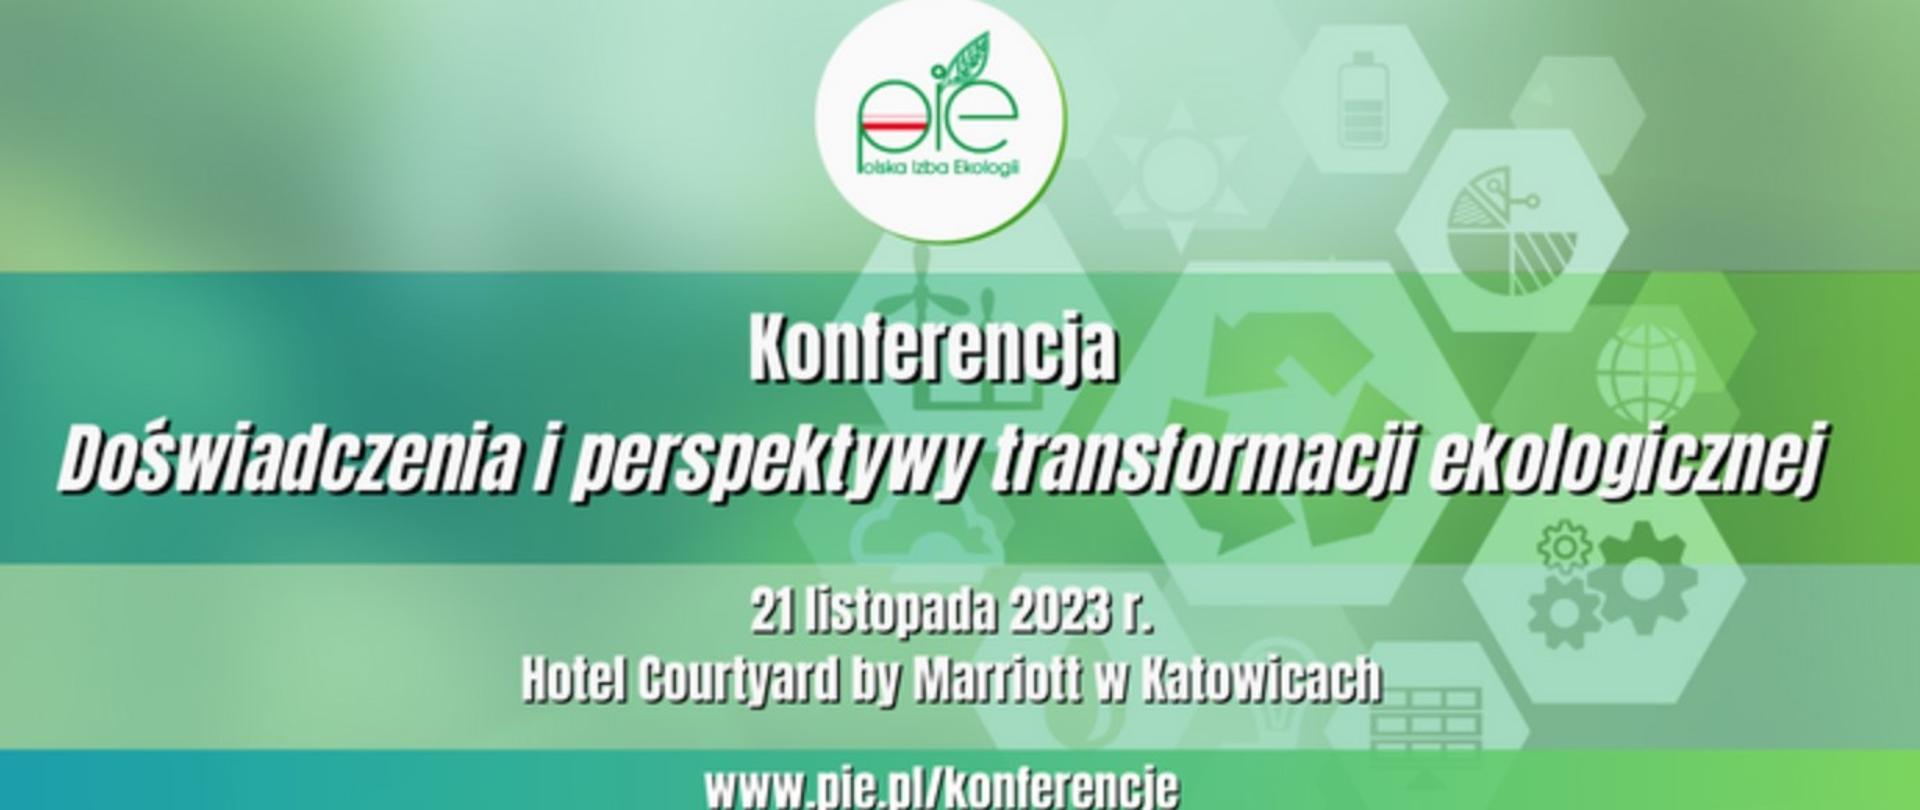 Plakat informacyjno-promocyjny o konferencji pn. Doświadczenie i perspektywy transformacji ekologicznej. 21 listopada 2023 Hotel Courtyard by Marriott w Katowicach.